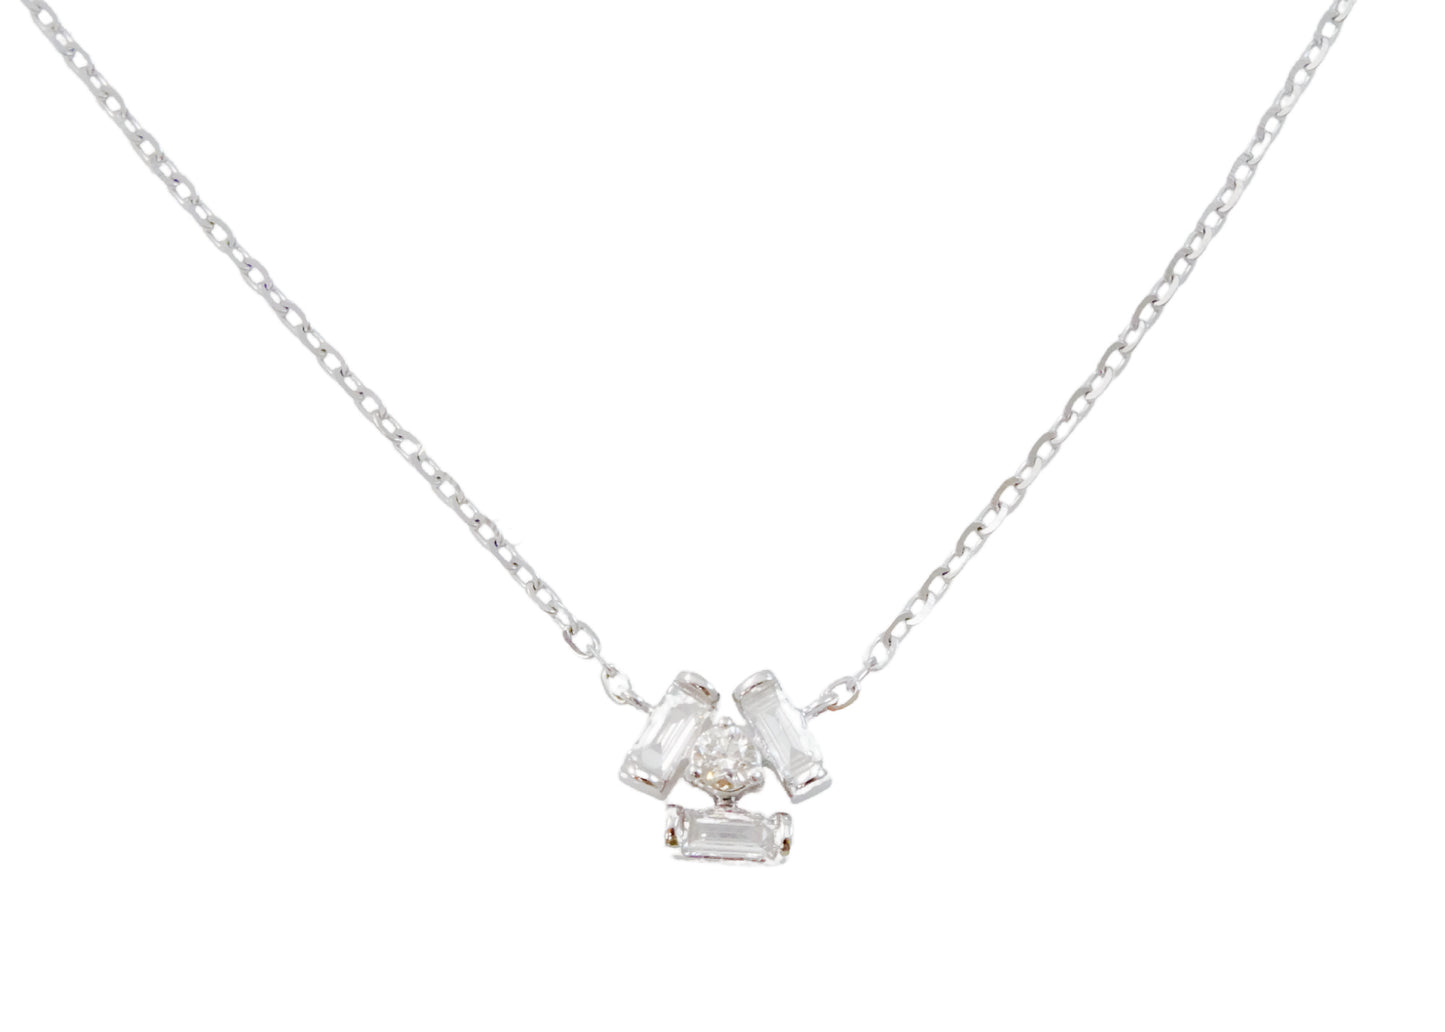 Flower shape with Baguette Cut Diamond Necklace